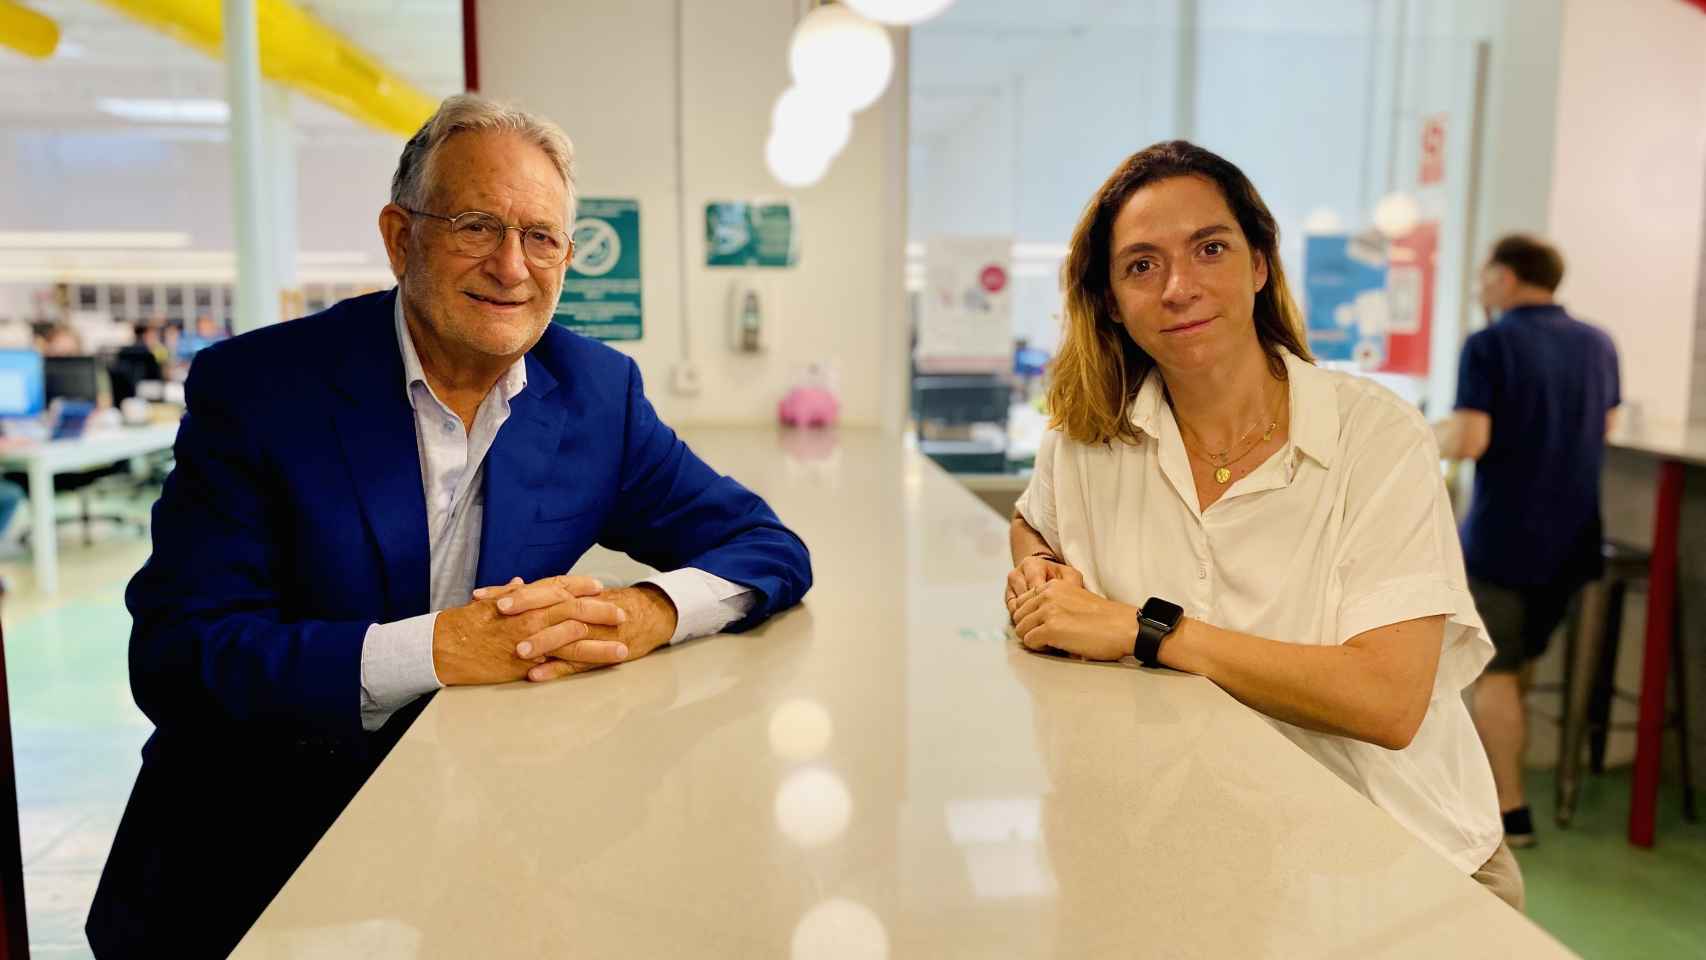 Jean-Paul Devai (cofundador y CEO) y María Muntaner (cofundadora y CMO) en una de las cafeterías de Coffeecard.